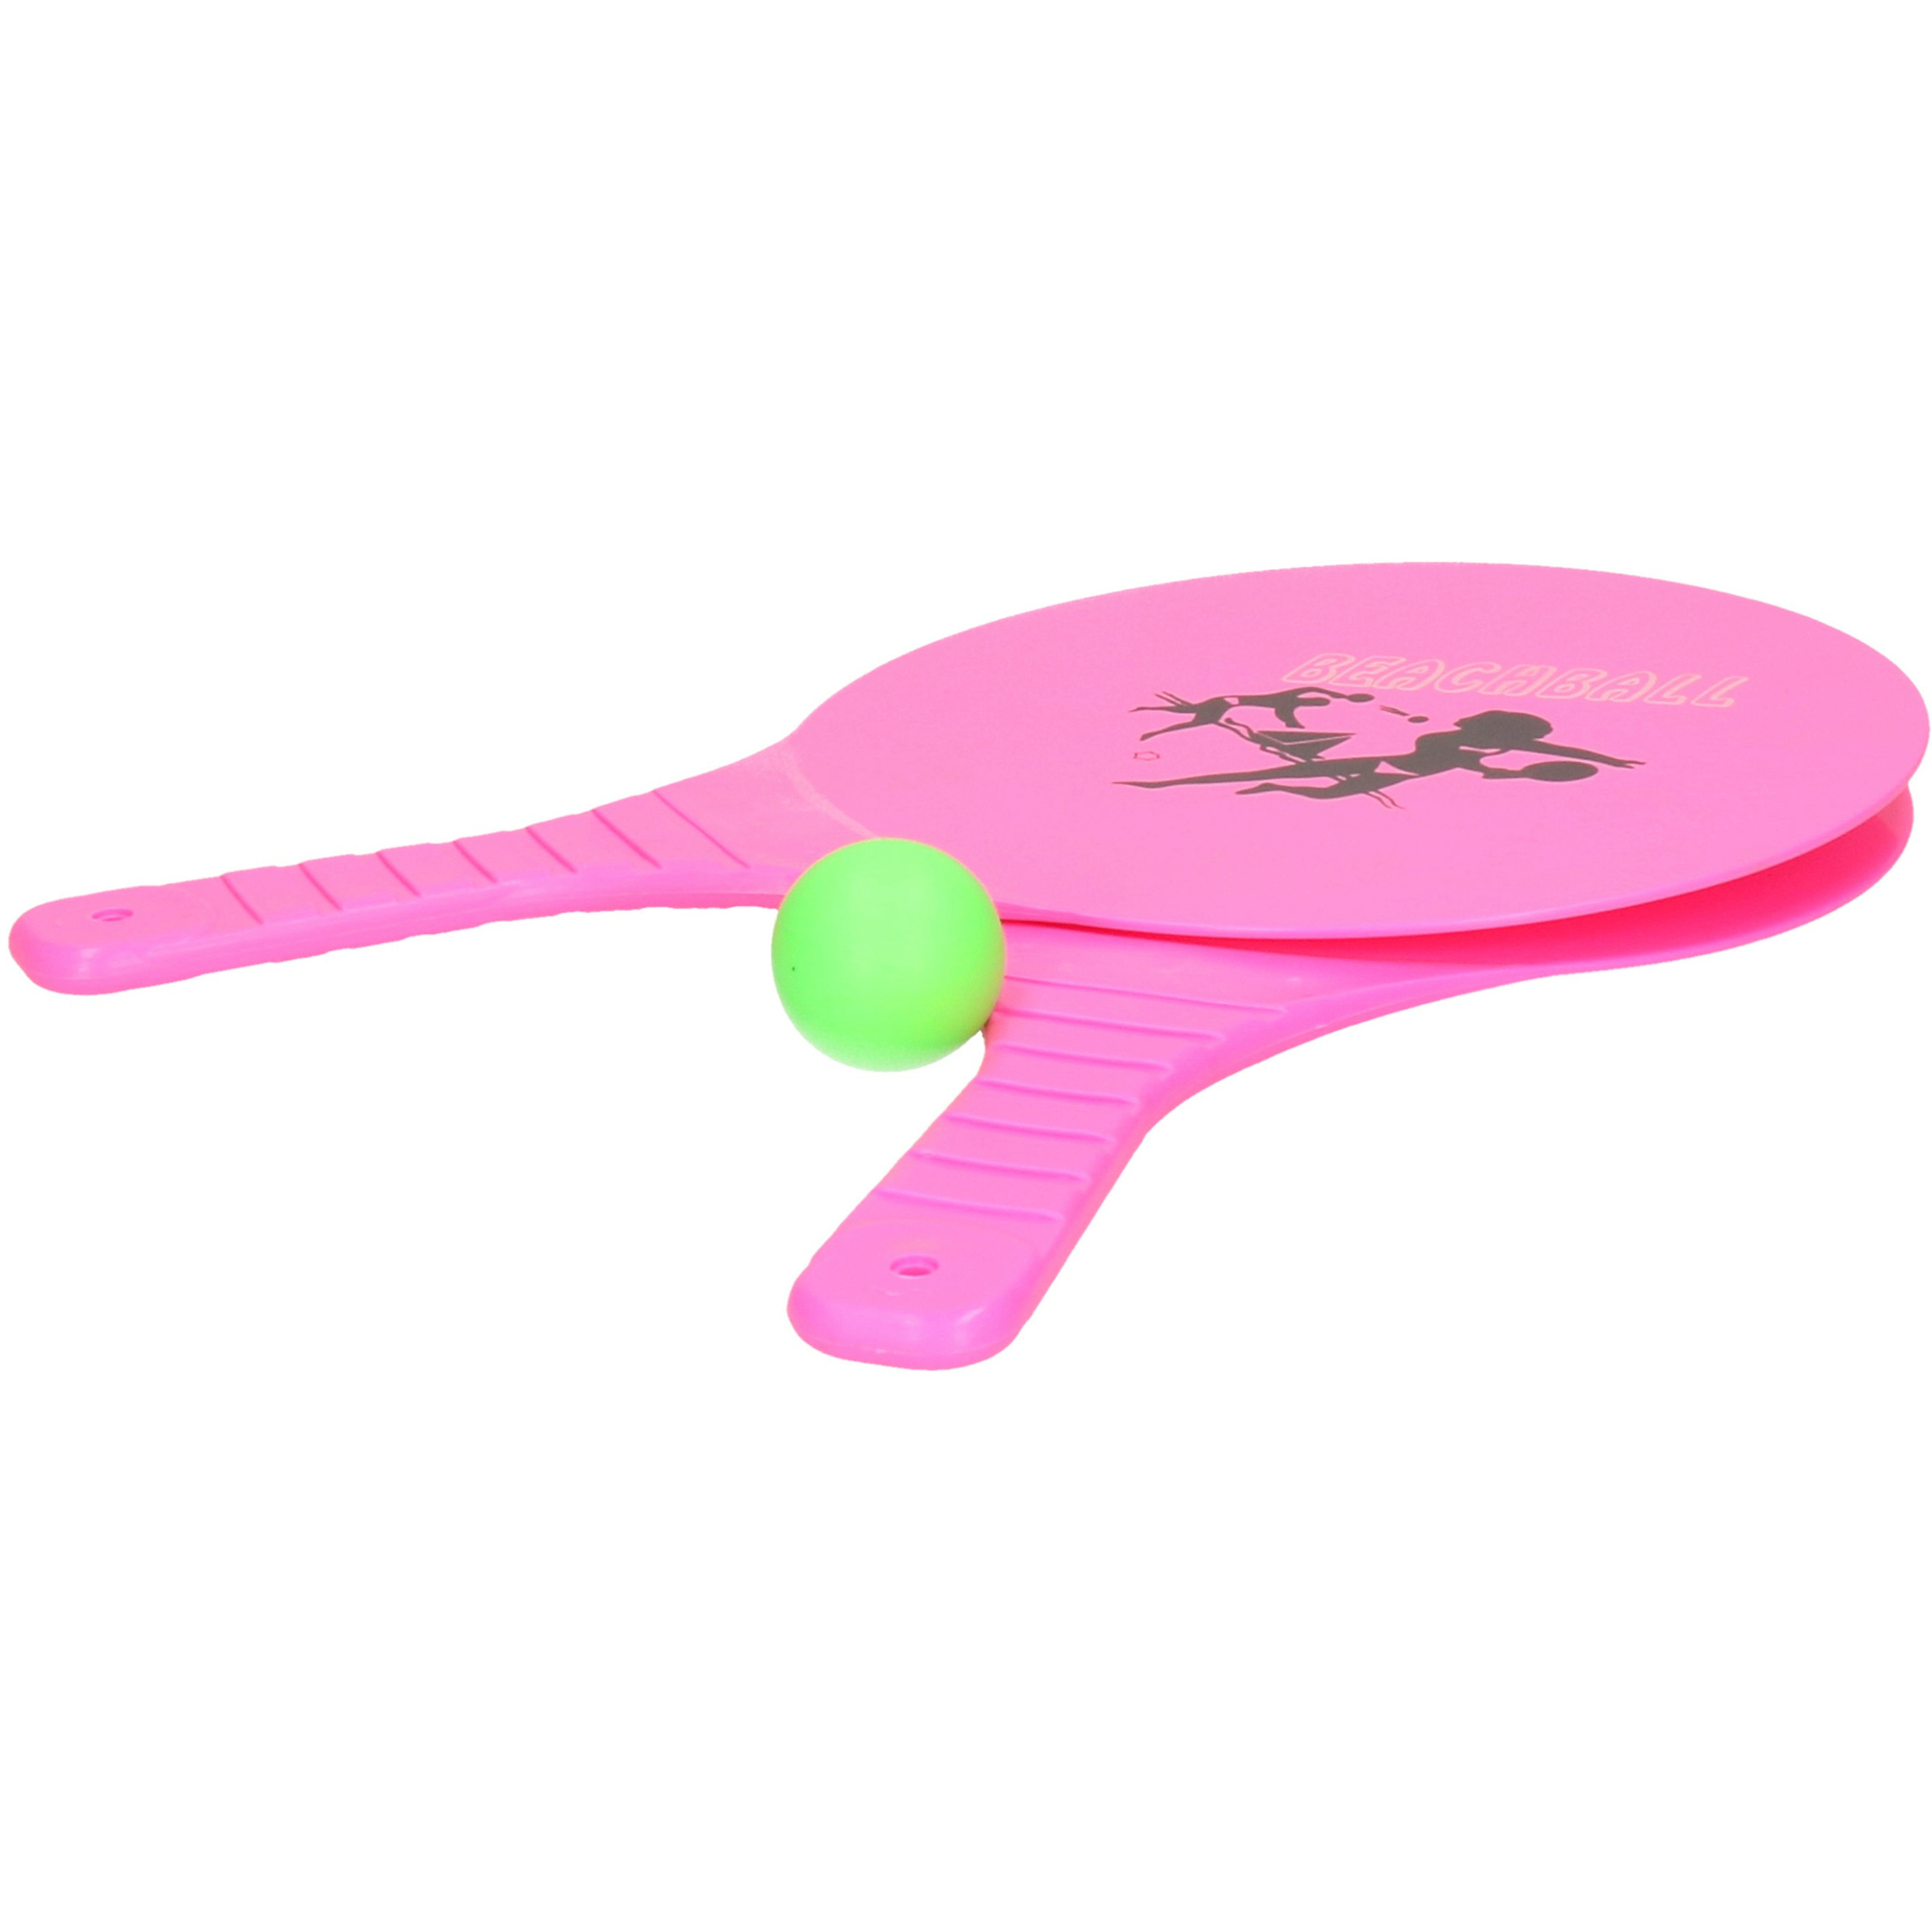 Summertime Beachball set buitenspeelgoed fuchsia roze Rackets-batjes en bal Tennis ballenspel